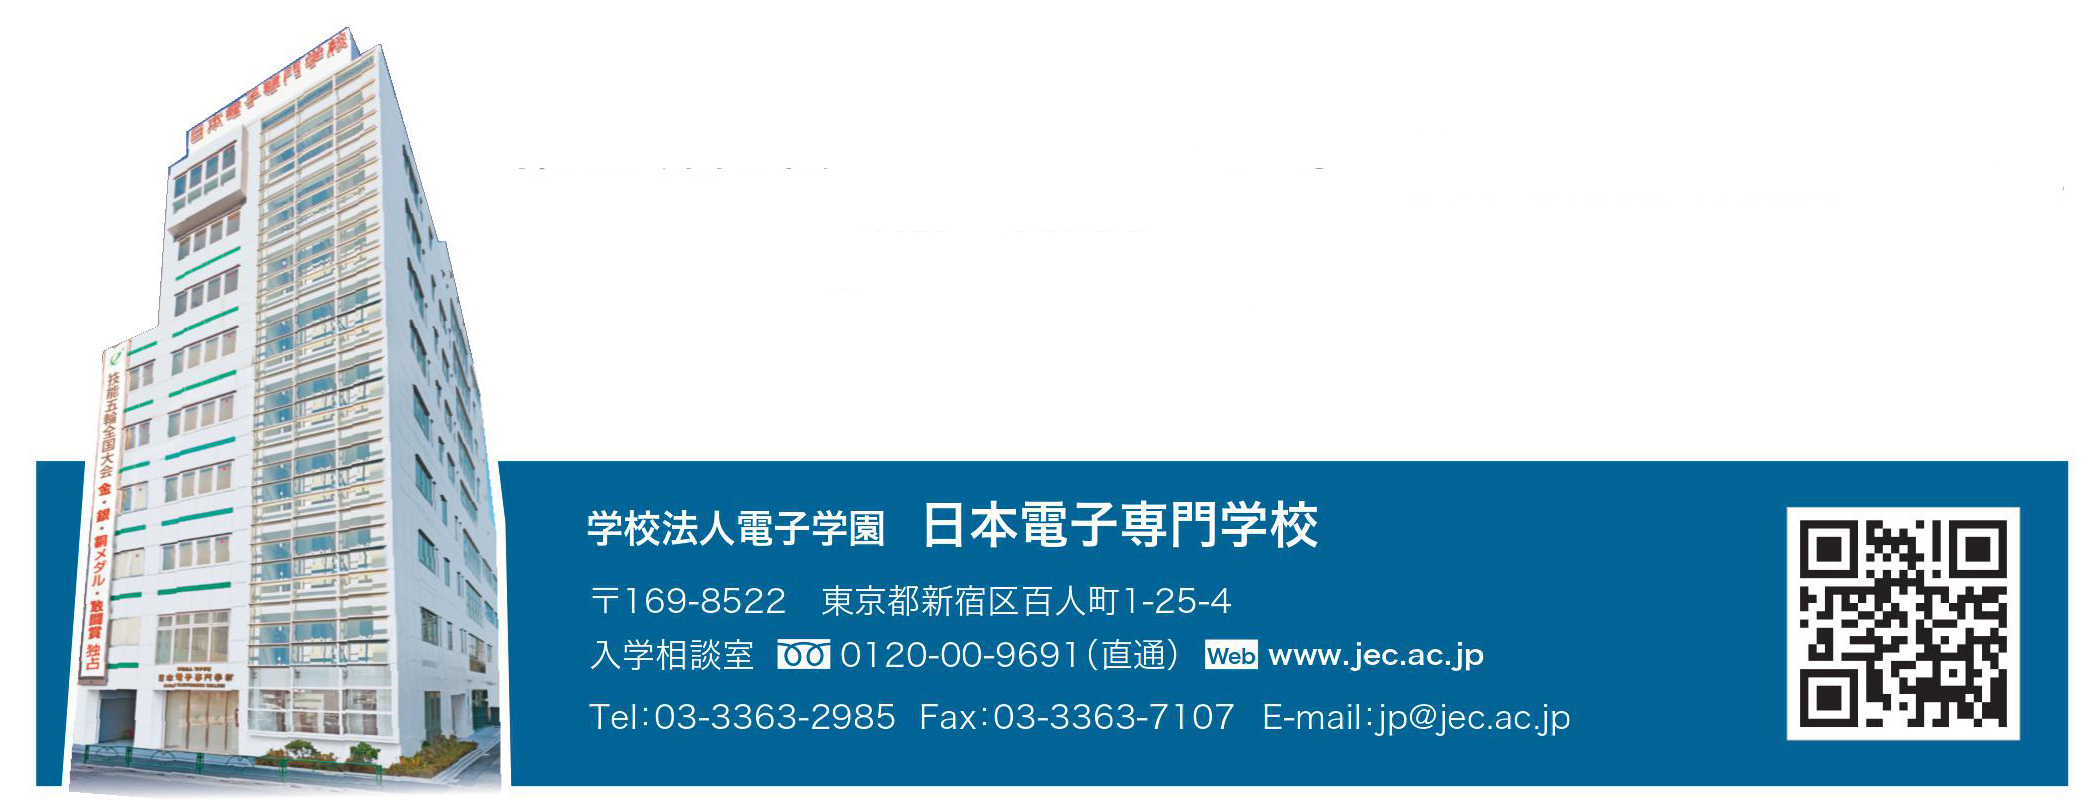 일본전자전문학교  (8).jpg